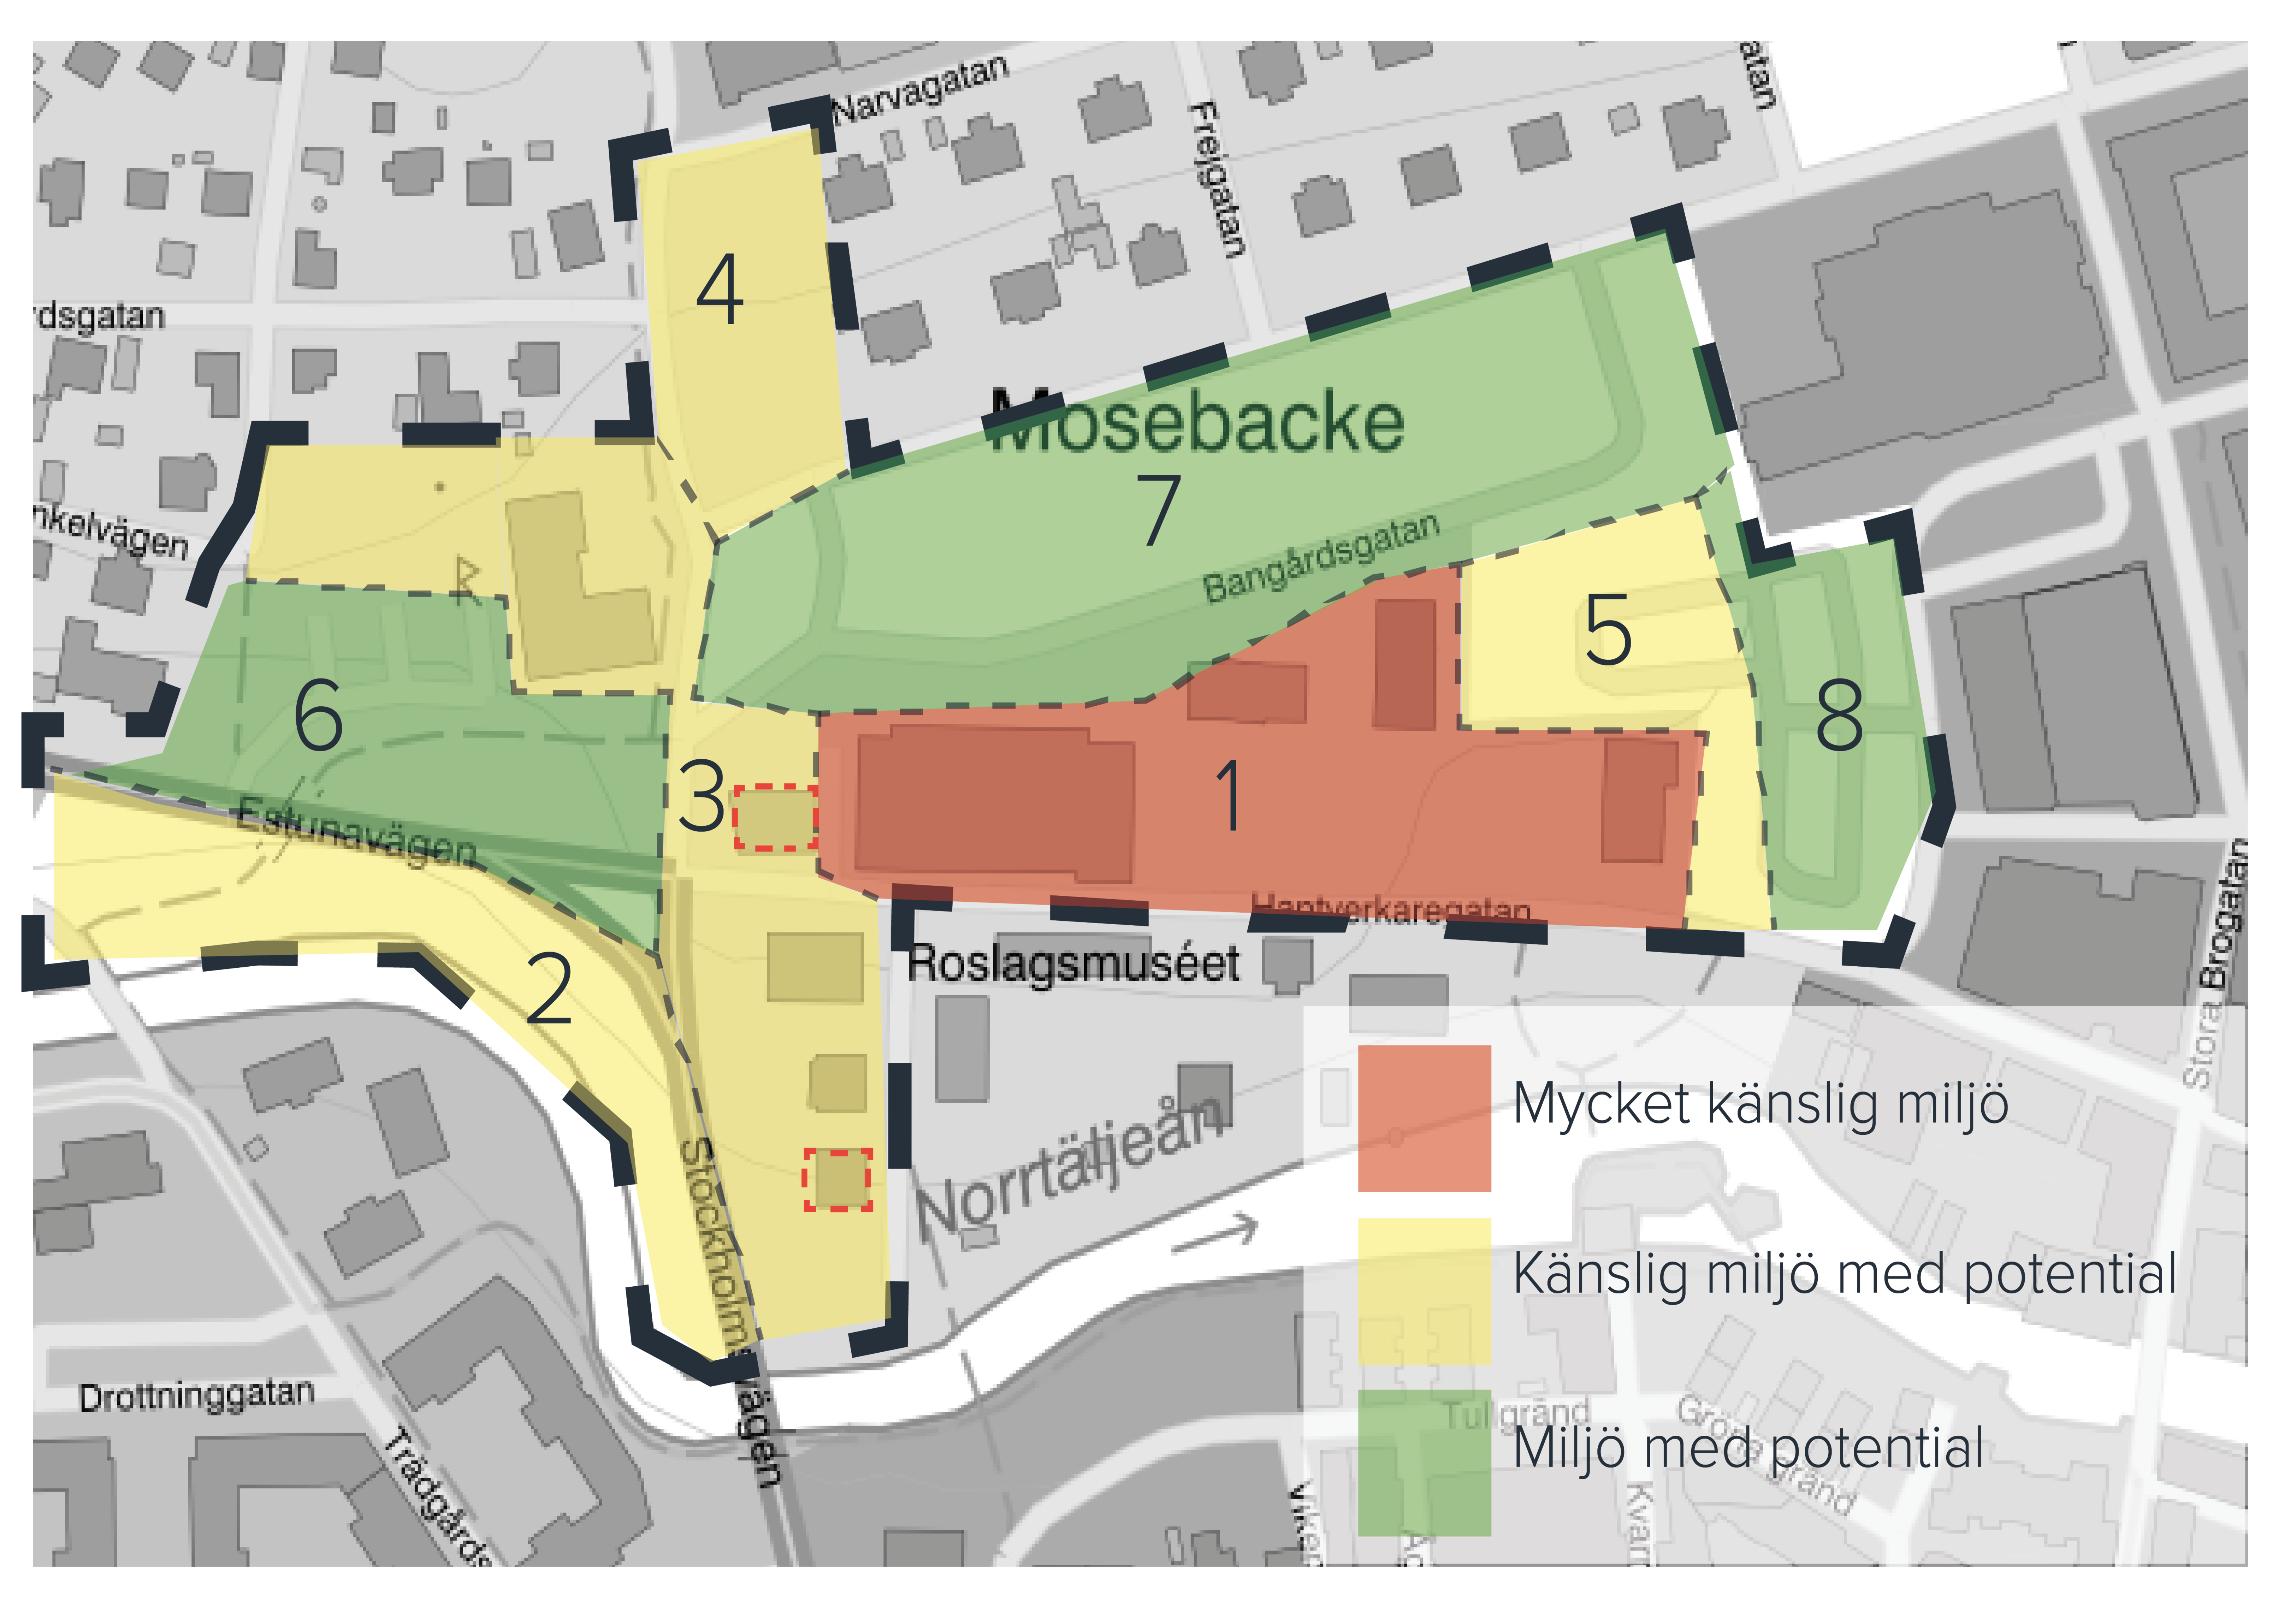 Karta med områden med olika känslighet och potential inom busstorget i norrtälje stad